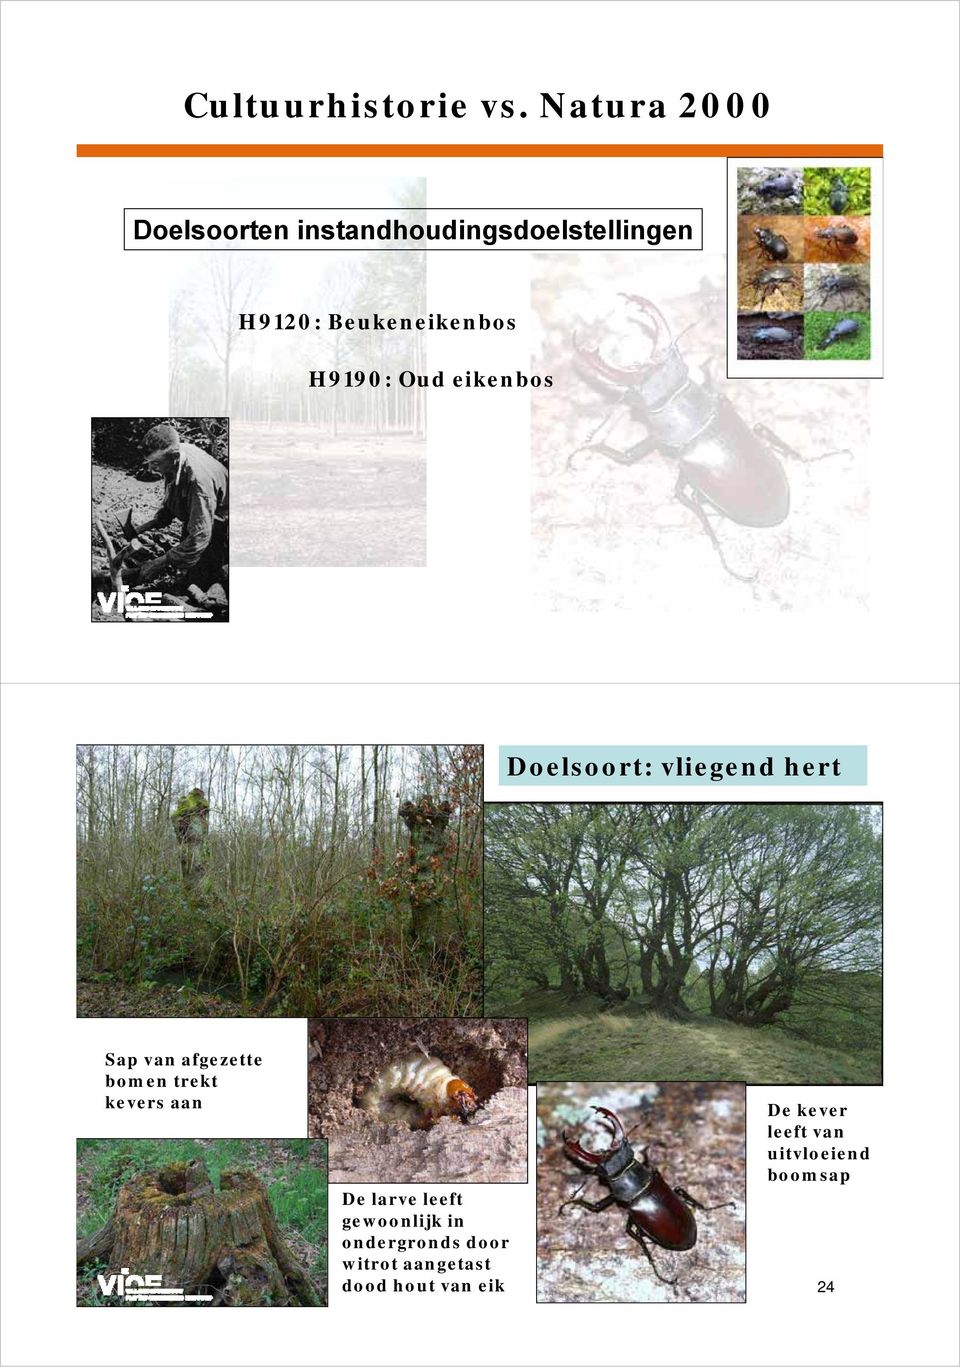 H9190: Oud eikenbos 23 Doelsoort: vliegend hert Sap van afgezette bomen